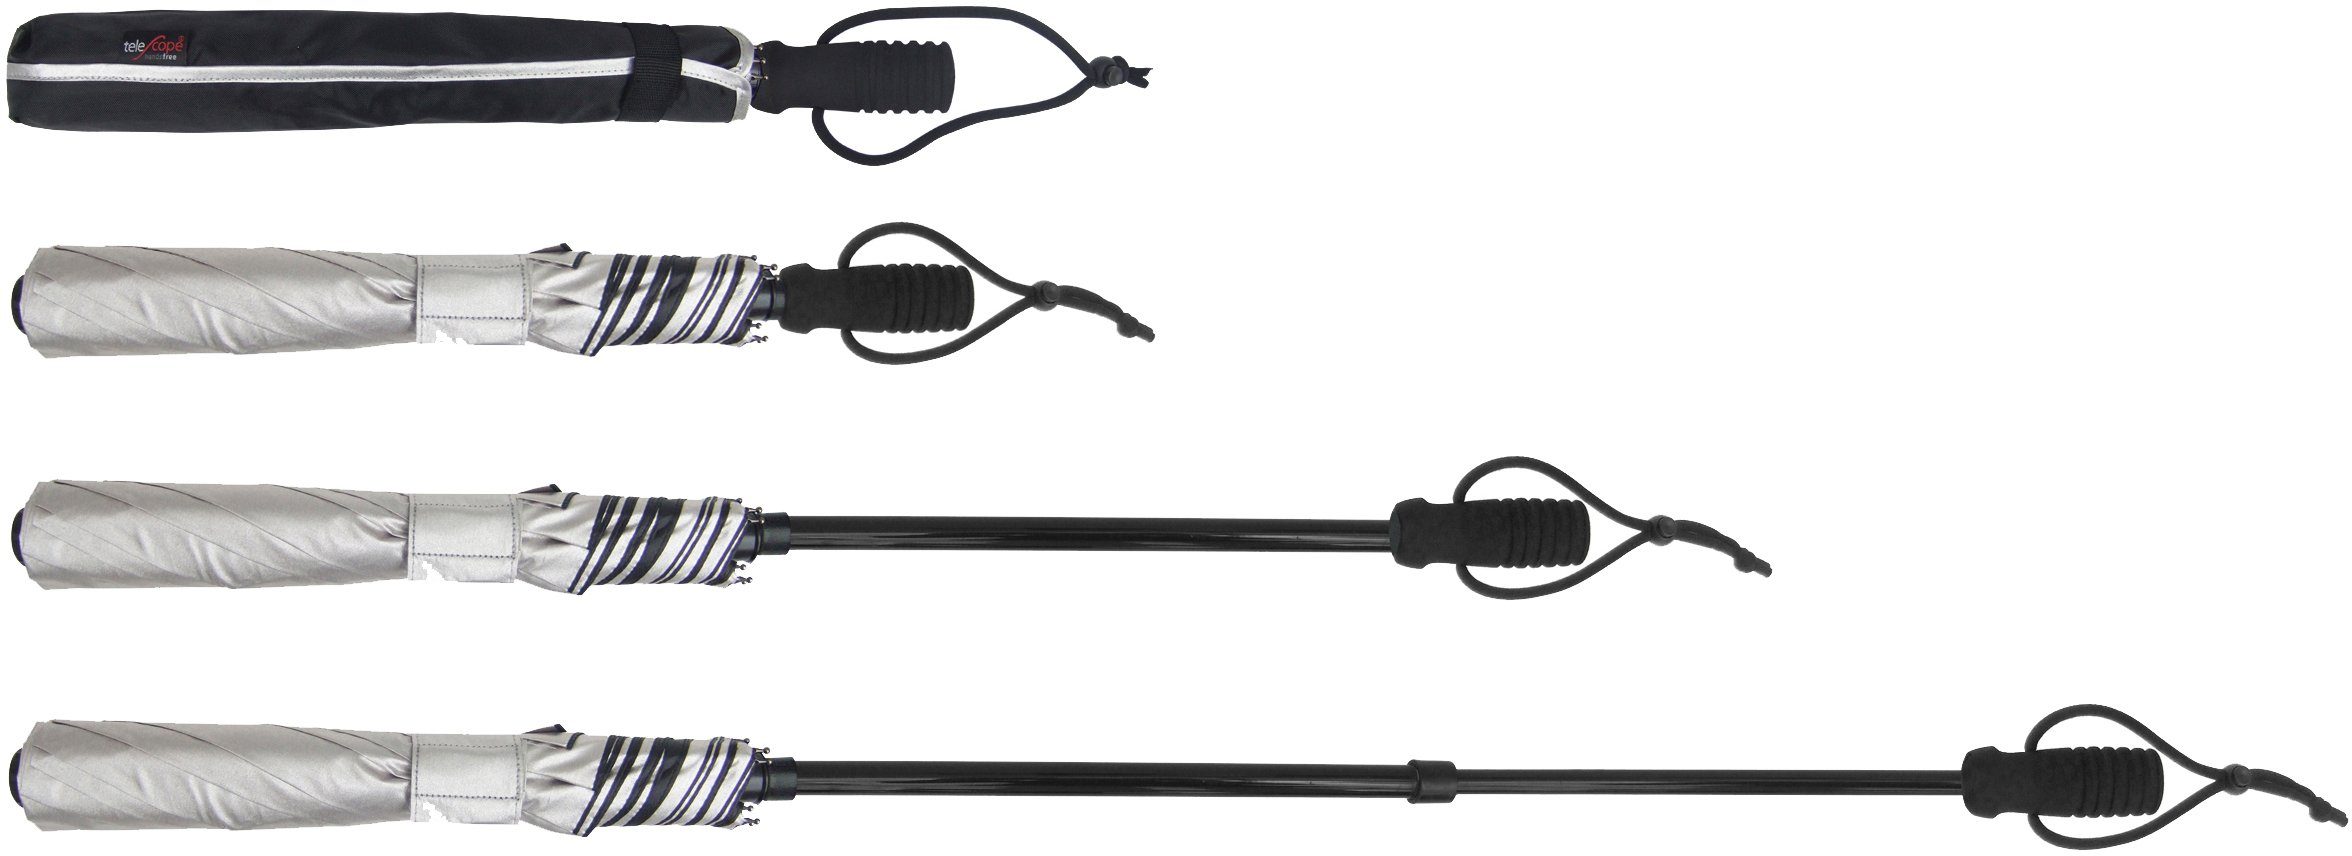 EuroSCHIRM® handsfree, tragbar, silber, 50+ teleScope UV-Lichtschutzfaktor mit handfrei Taschenregenschirm